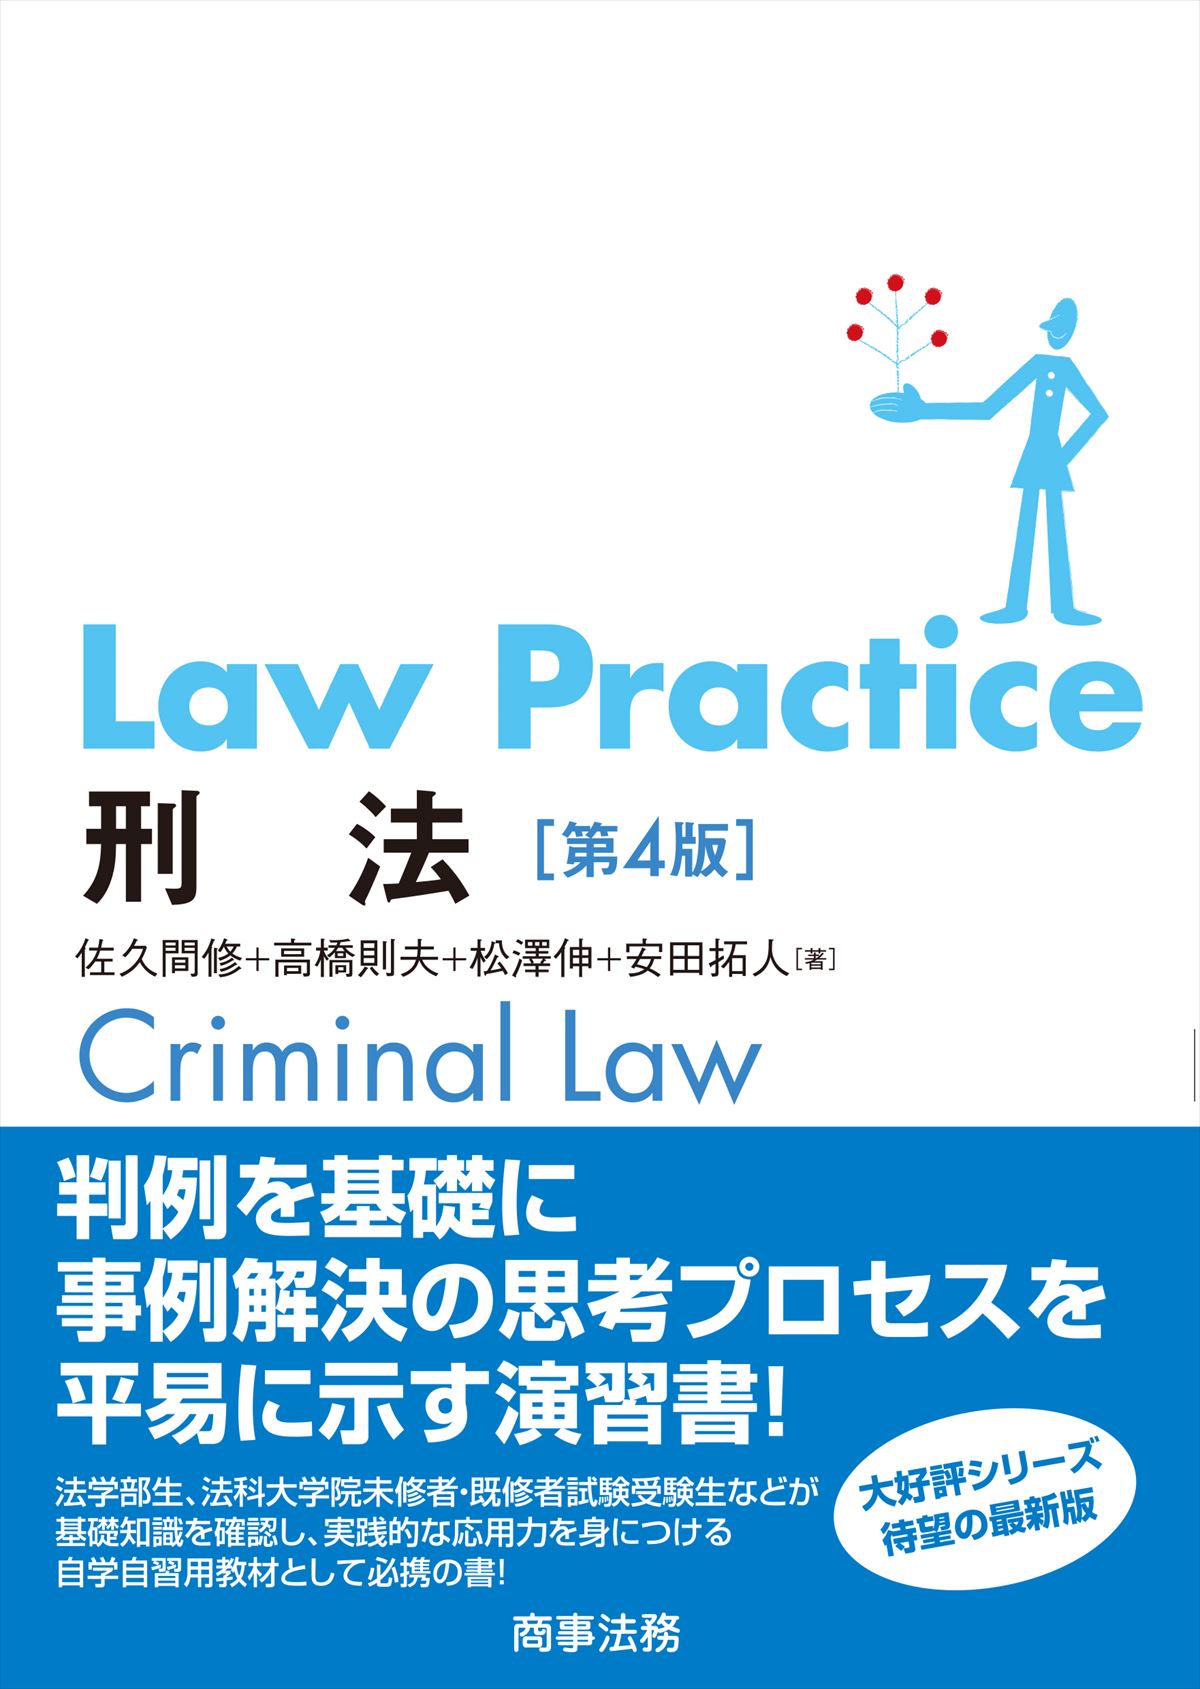 Law Practice　刑法の商品画像